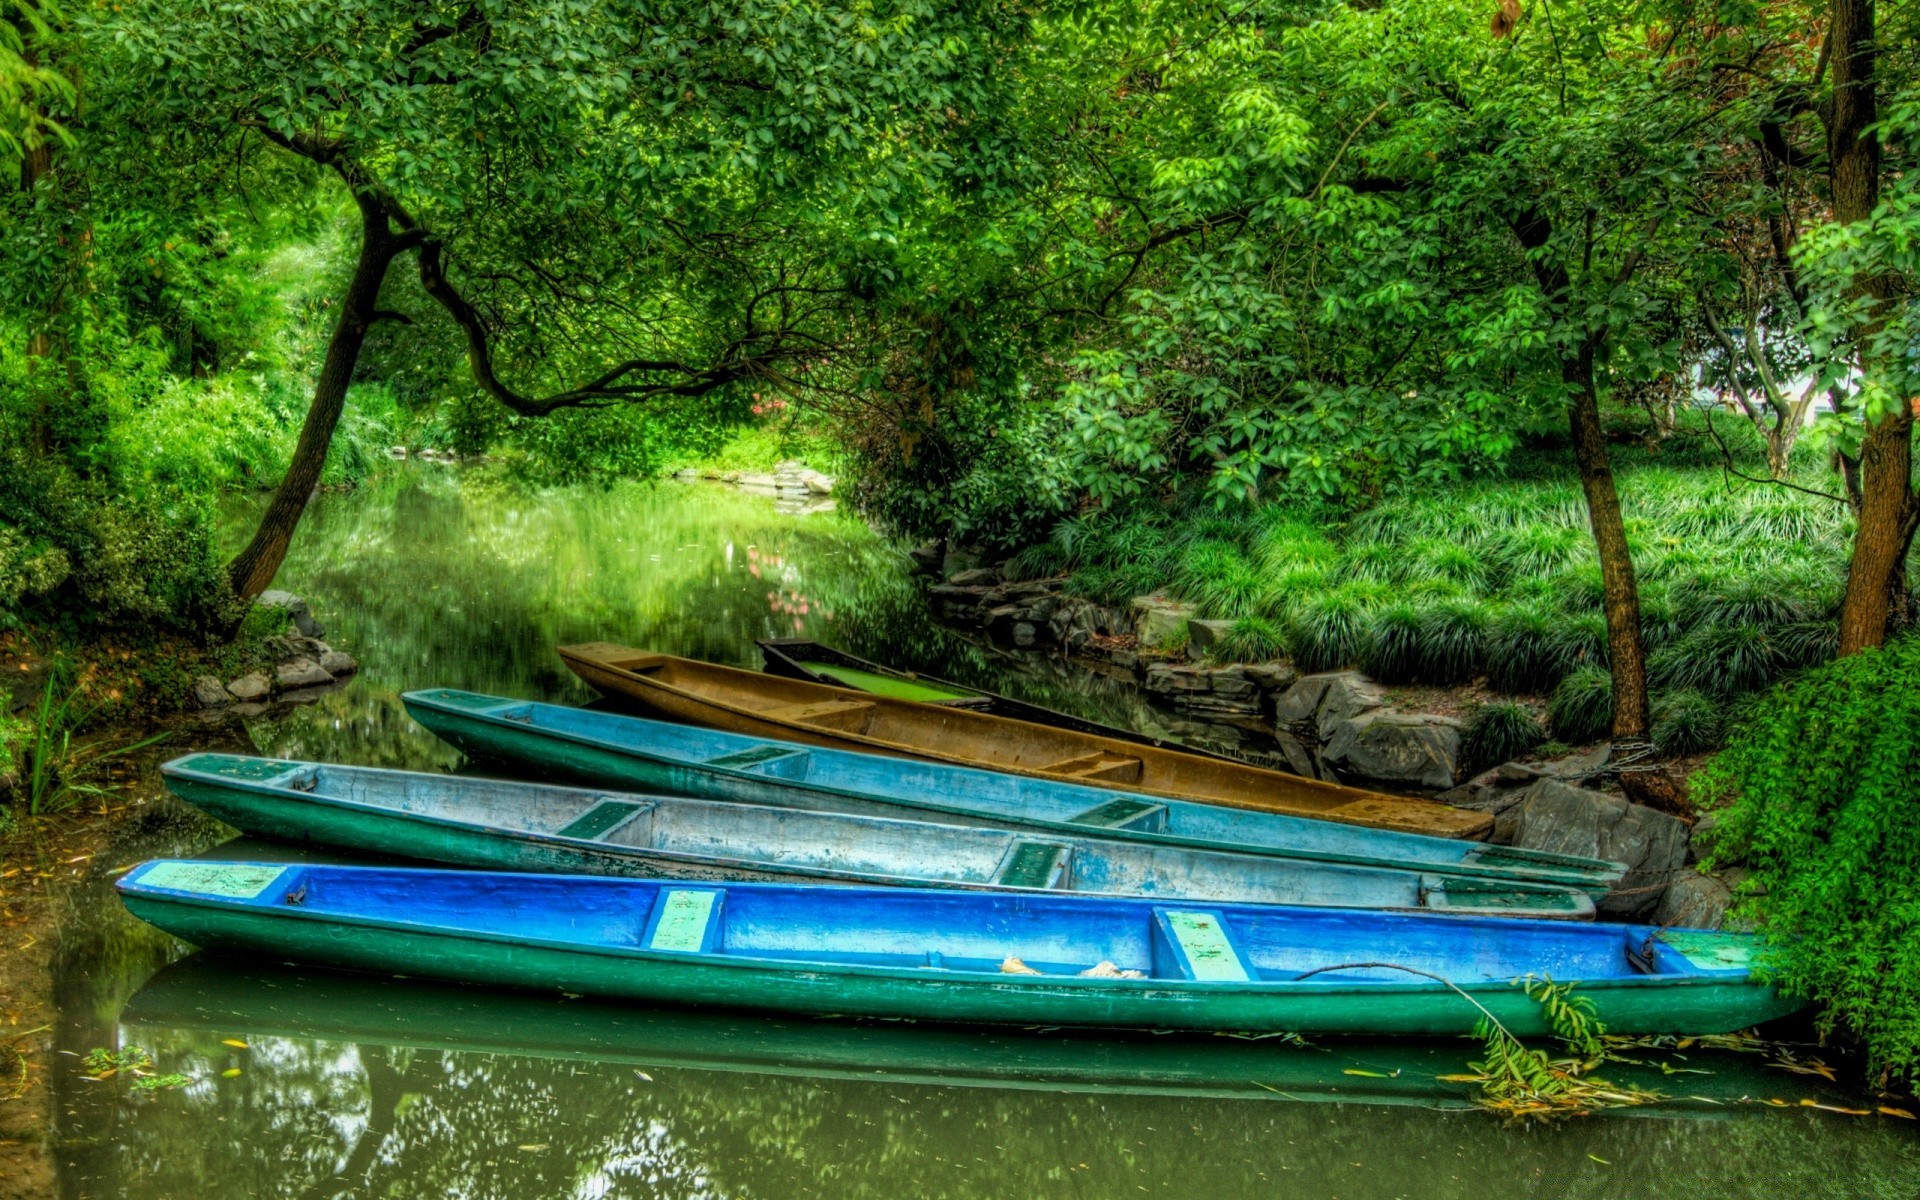 азия воды древесины река дерево природа пейзаж тропический путешествия лодка лето байда джунгли лист живописный среды отдых на открытом воздухе рай красивые парк